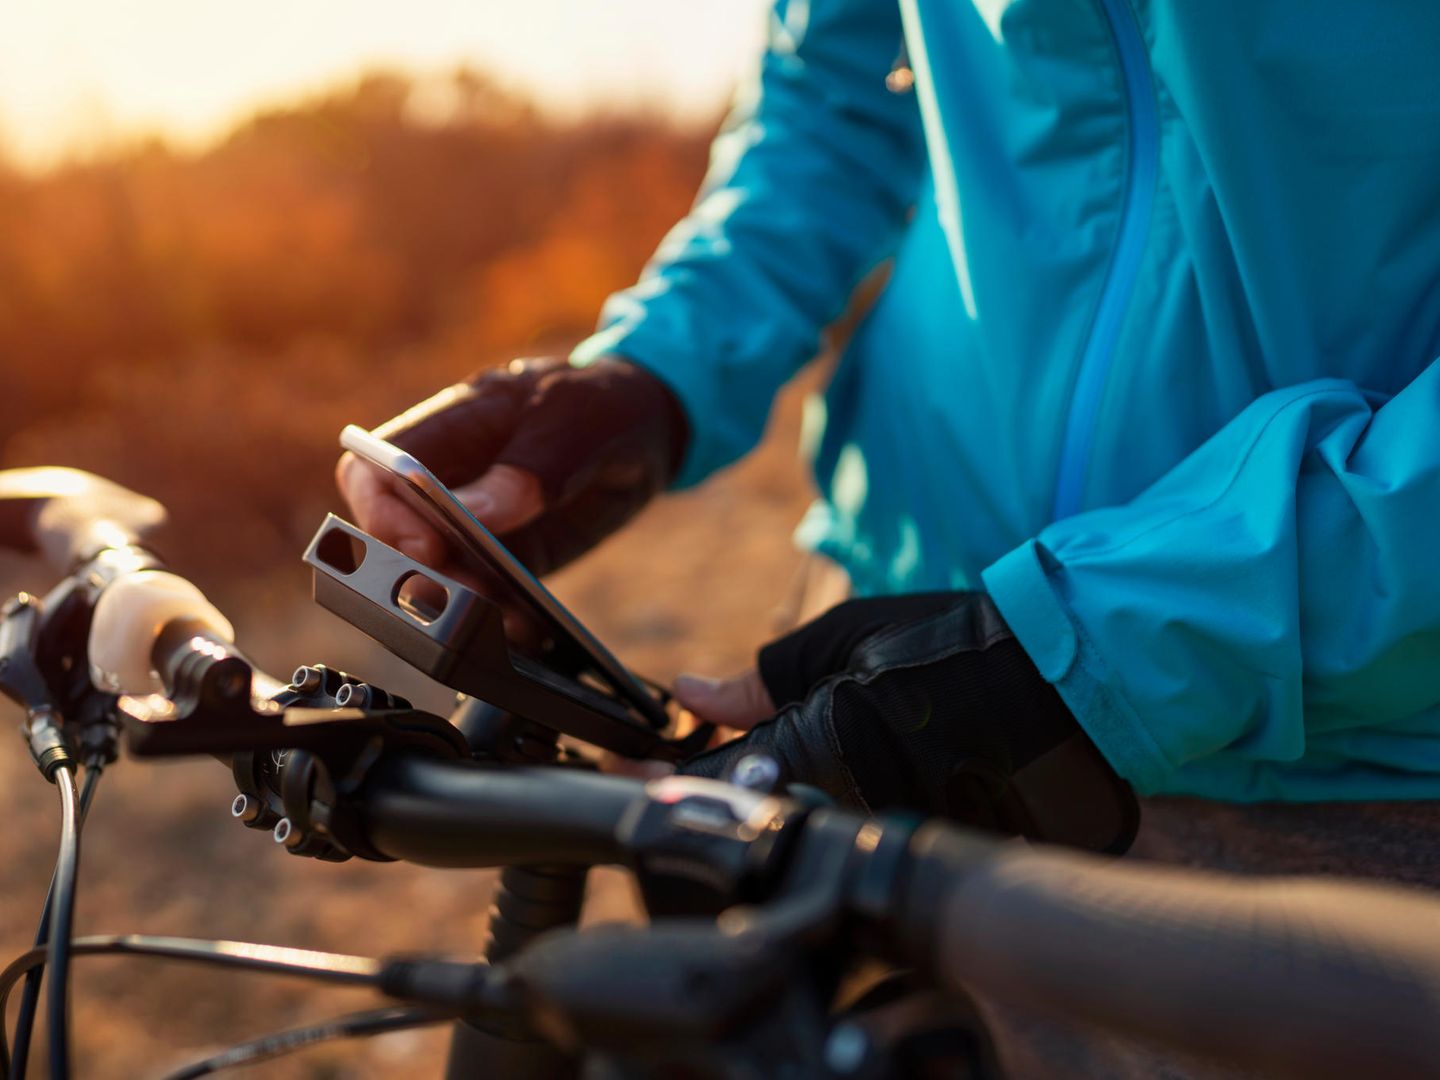 Handyhalterungen mit Powerbank fürs Fahrrad: Vier Modelle im Vergleich